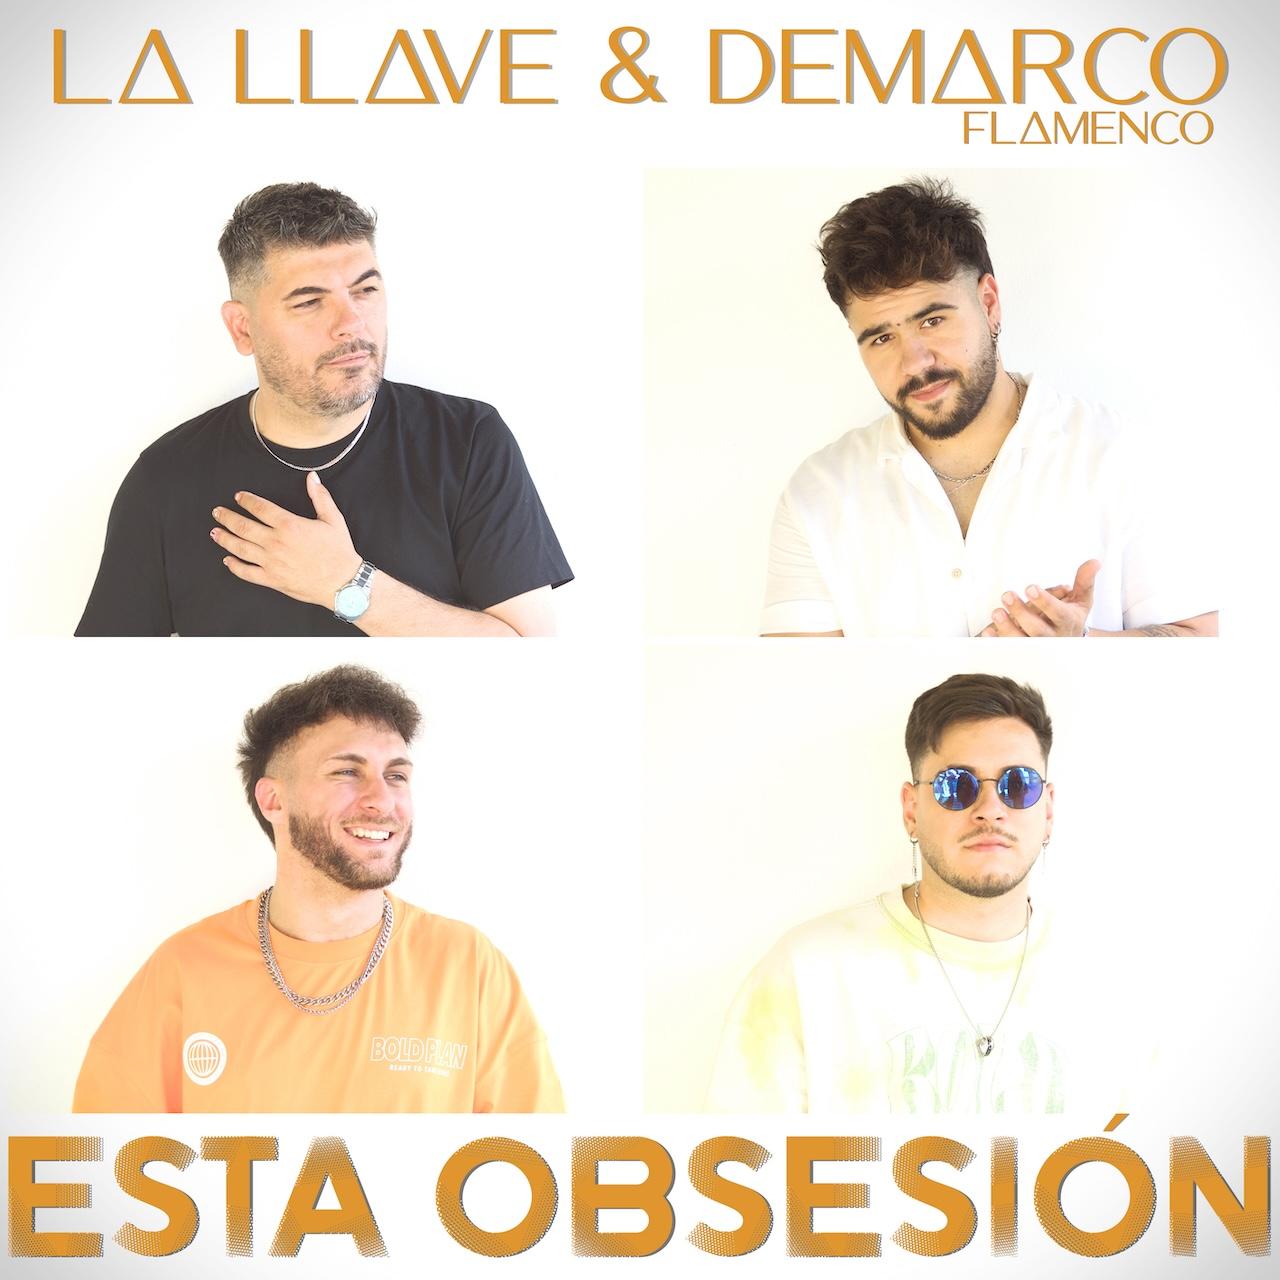 El grupo La Llave presenta su nuevo single inédito titulado 'Esta obsesión'